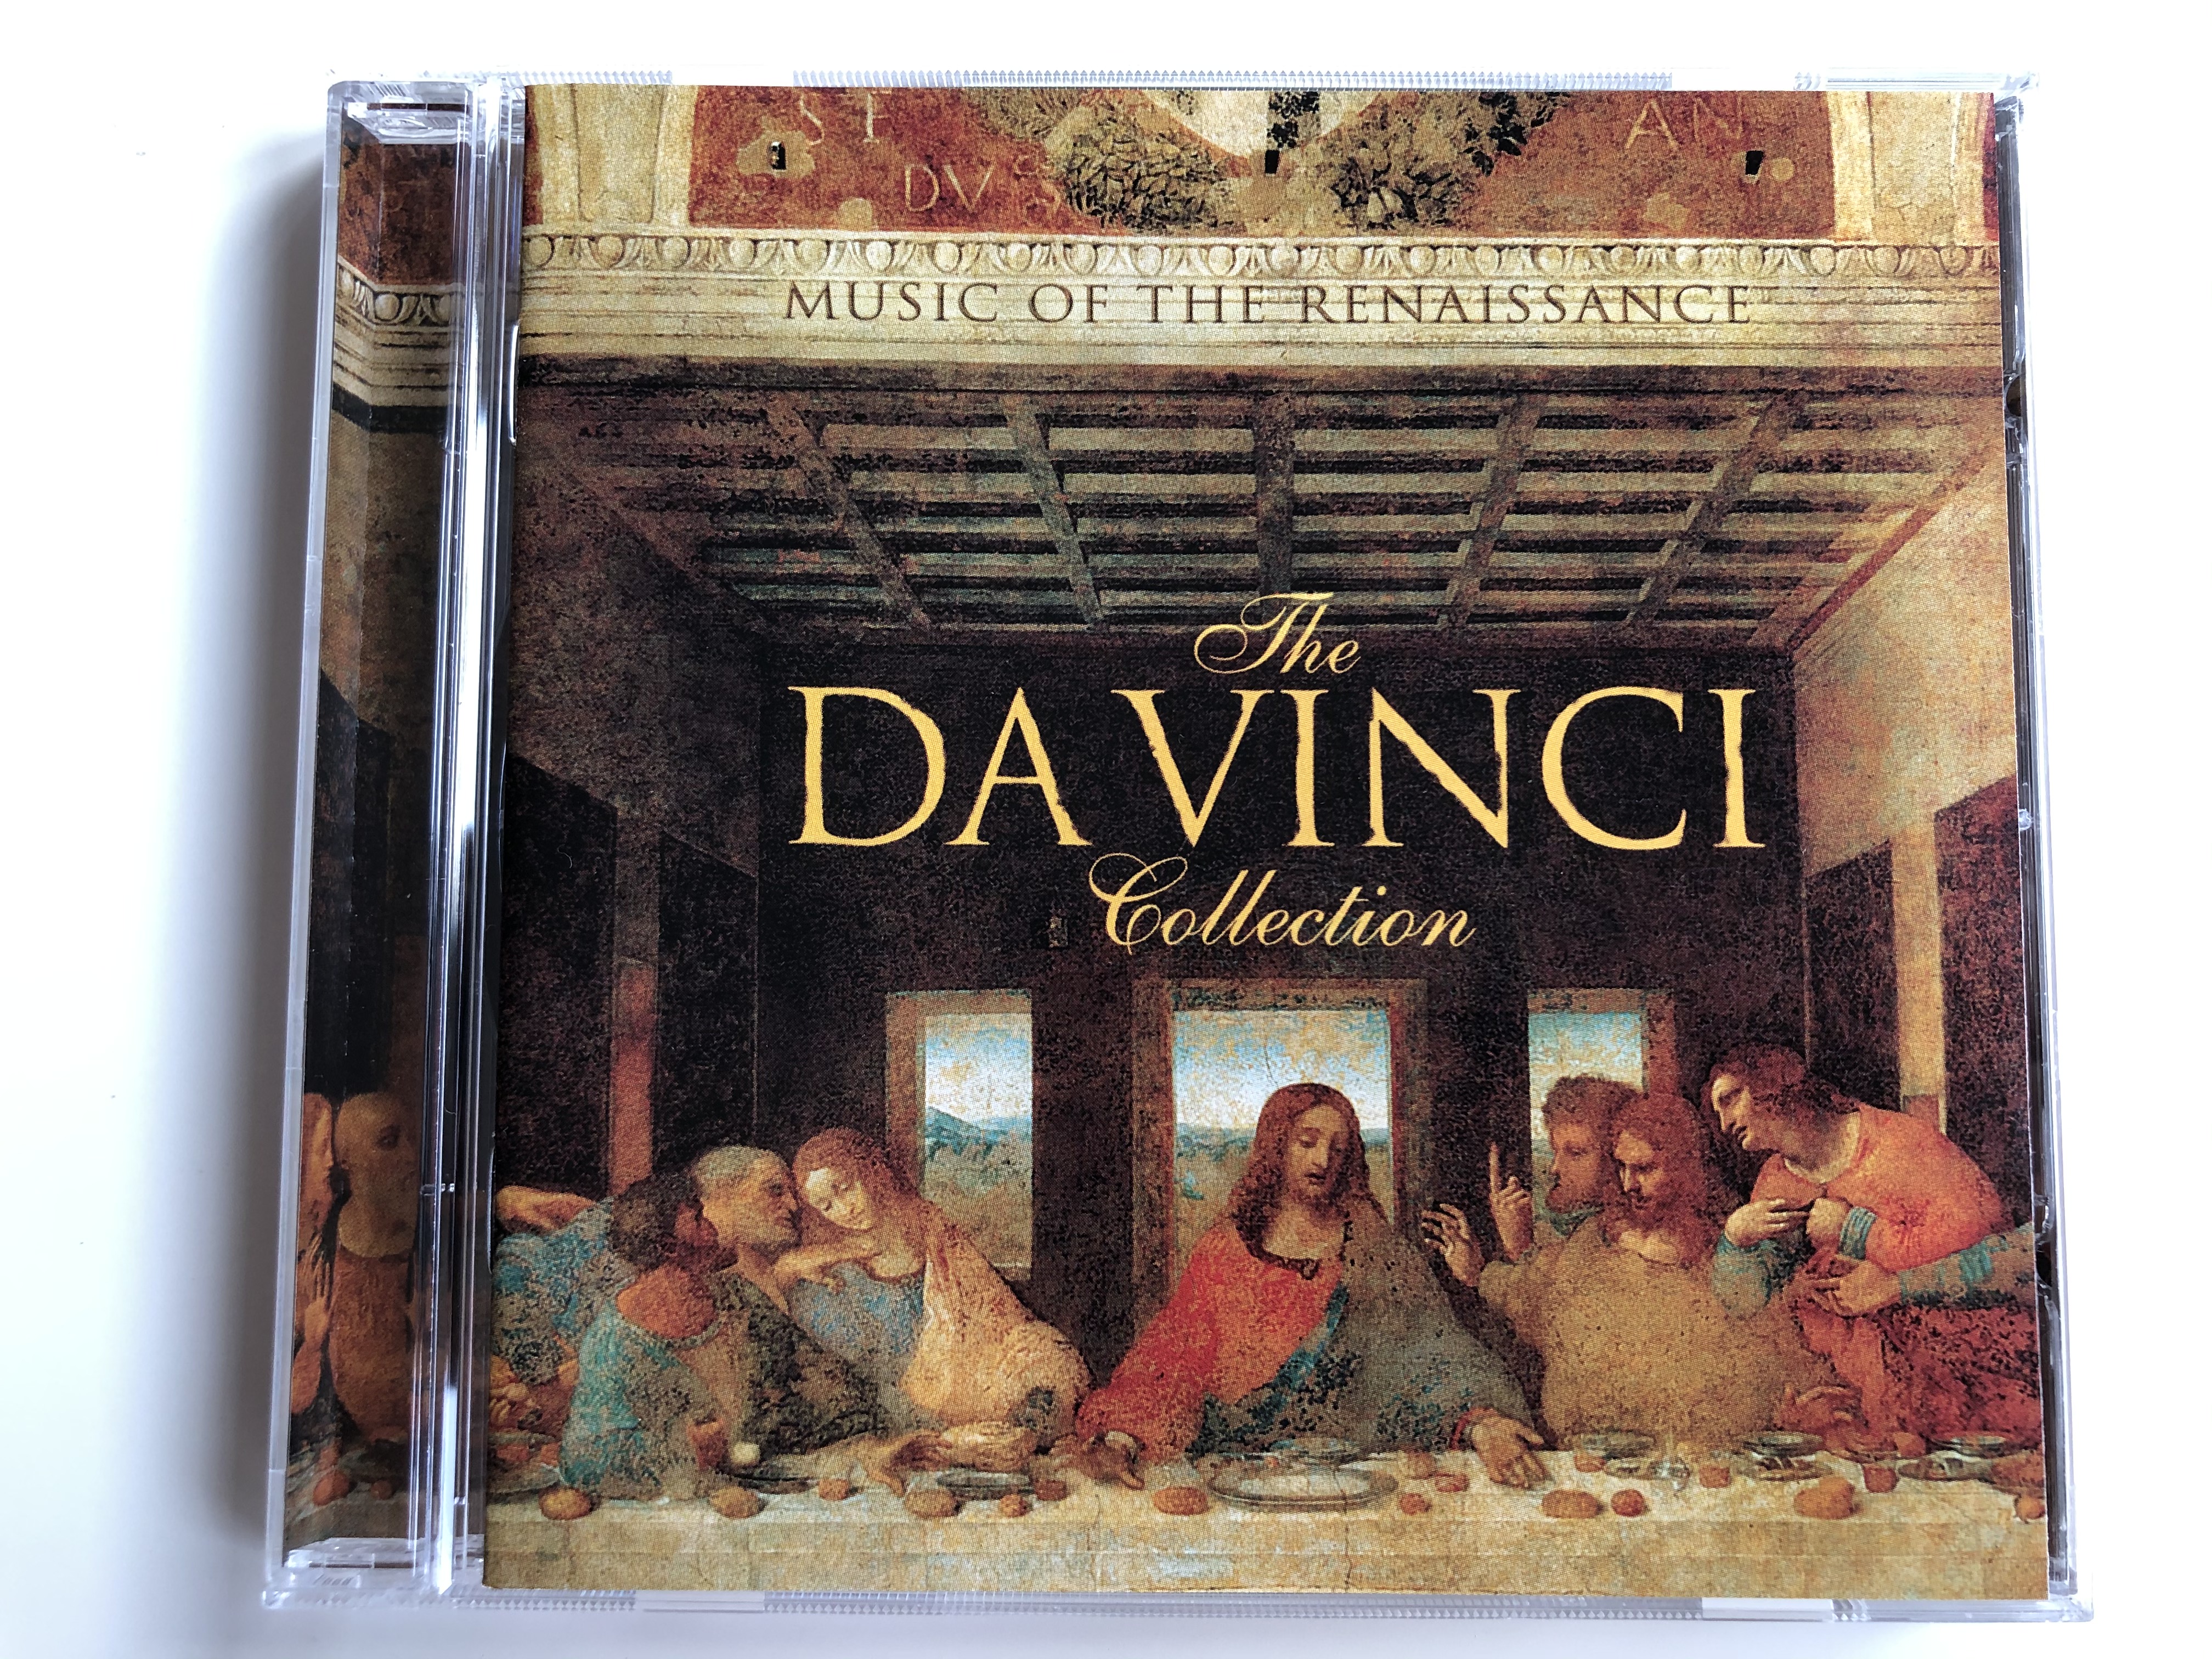 the-da-vinci-collection-emi-classics-audio-cd-2006-stereo-0946-3-61524-2-4-1-.jpg